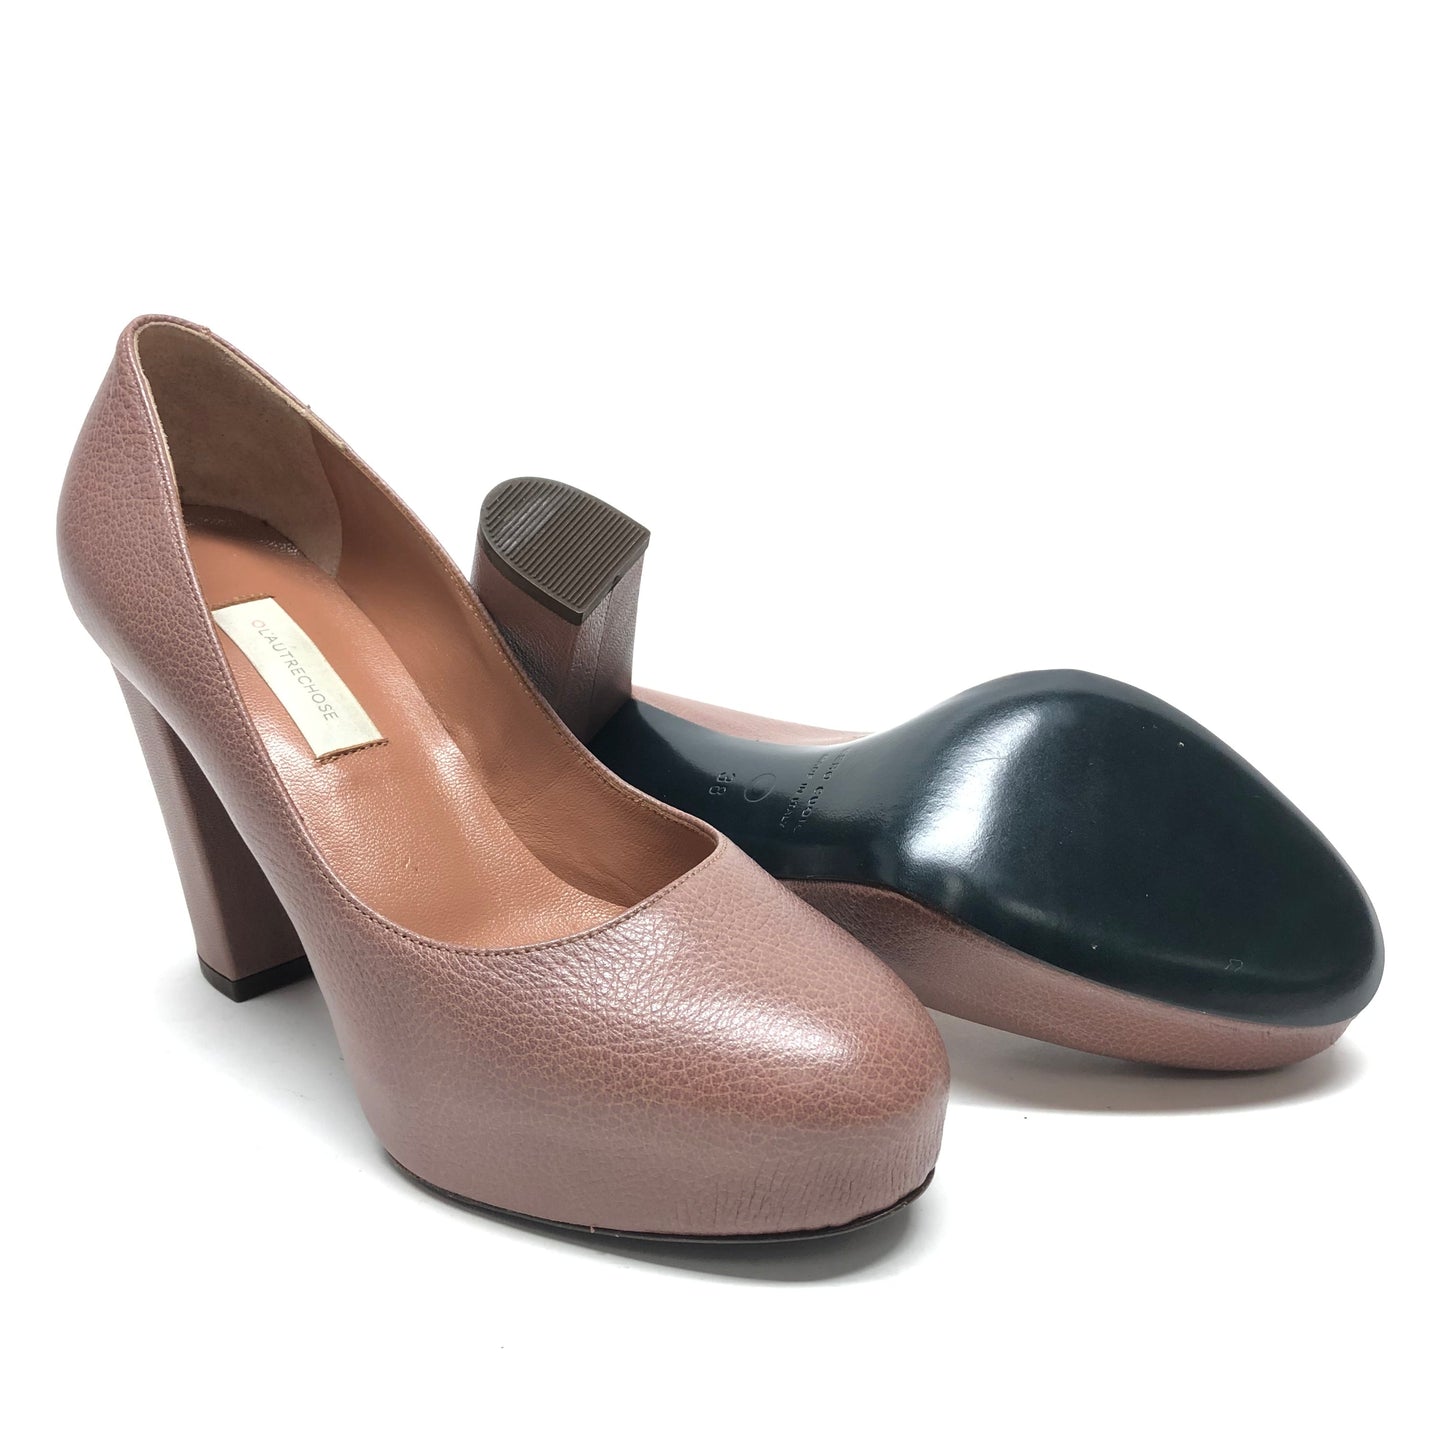 Mauve Shoes Heels Block Cmb, Size 8